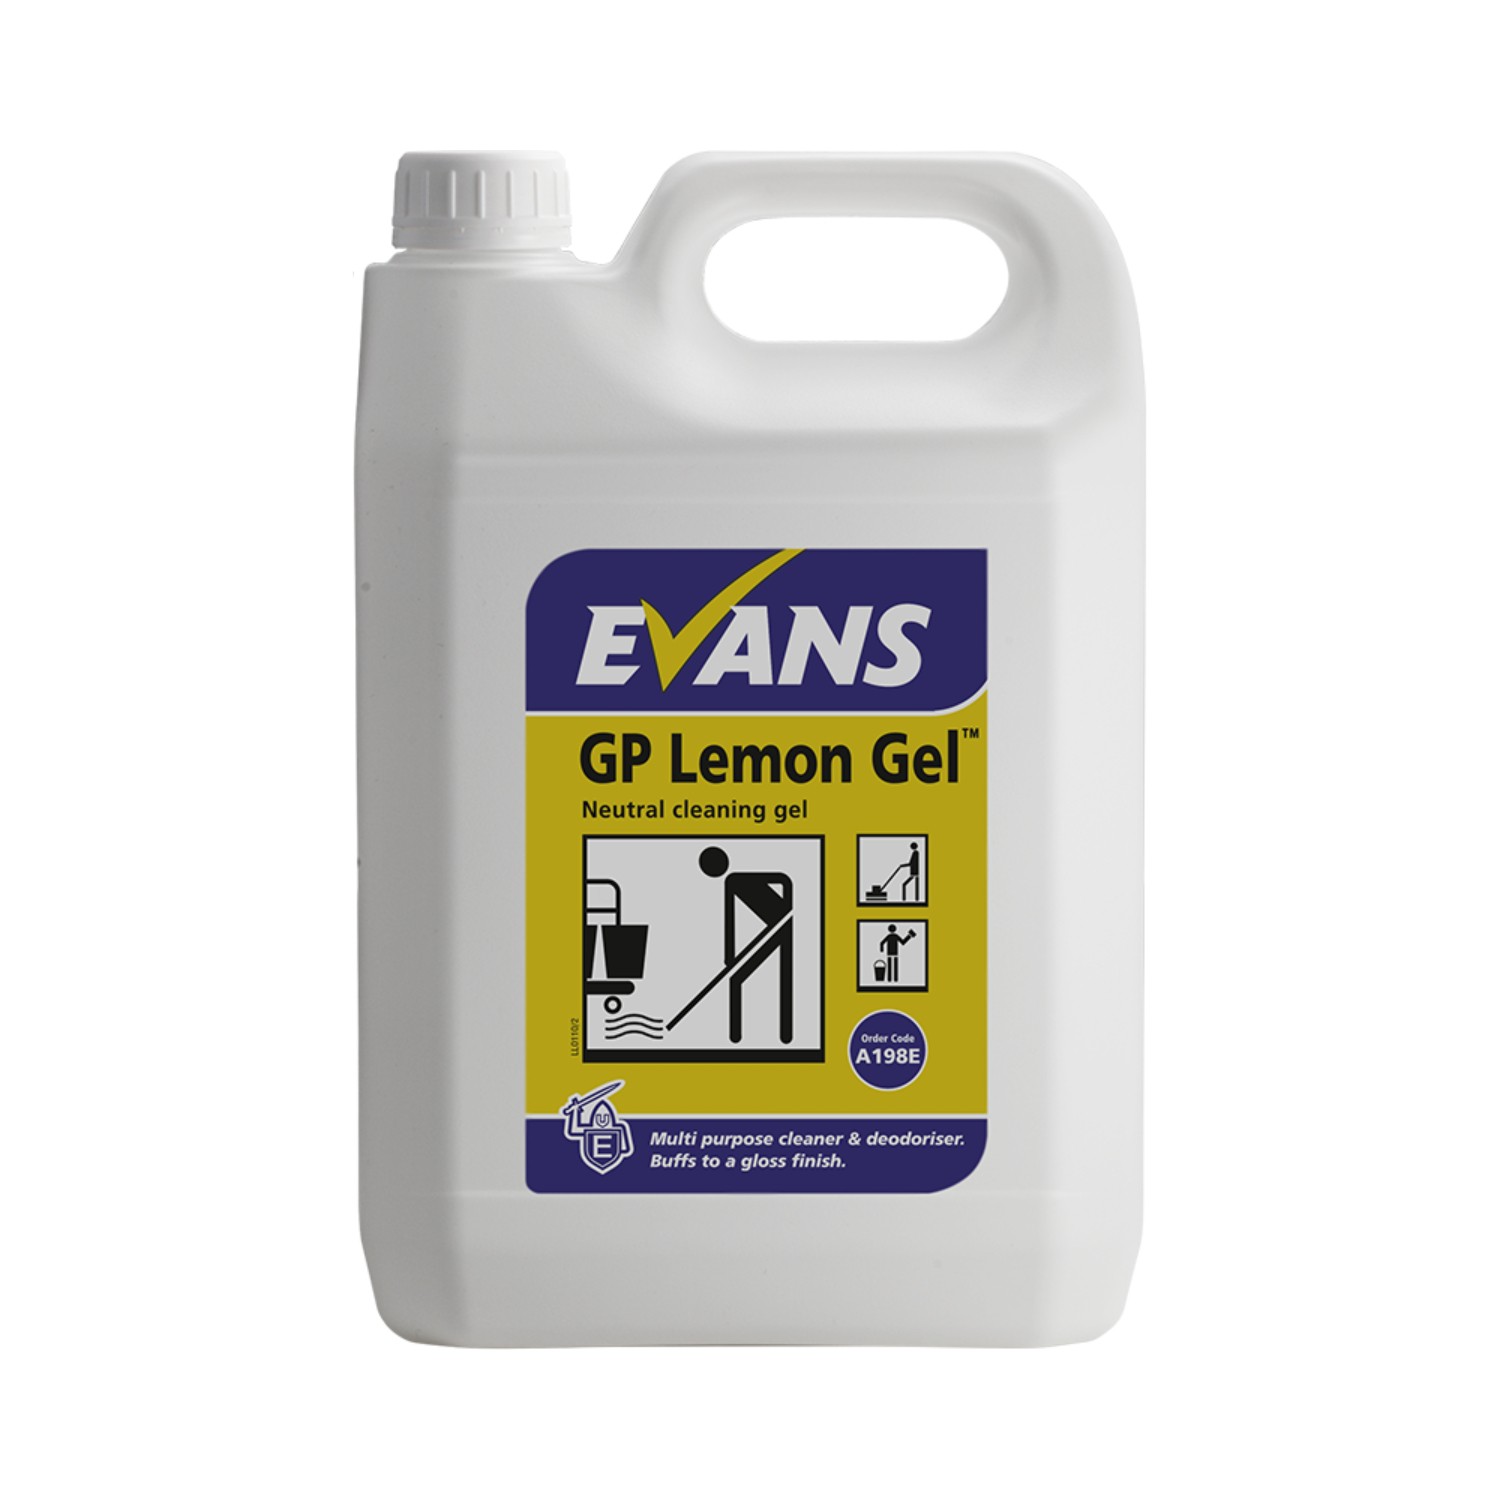 Evans+Lemon+Gel+Neutral+Cleaning+Gel+5L